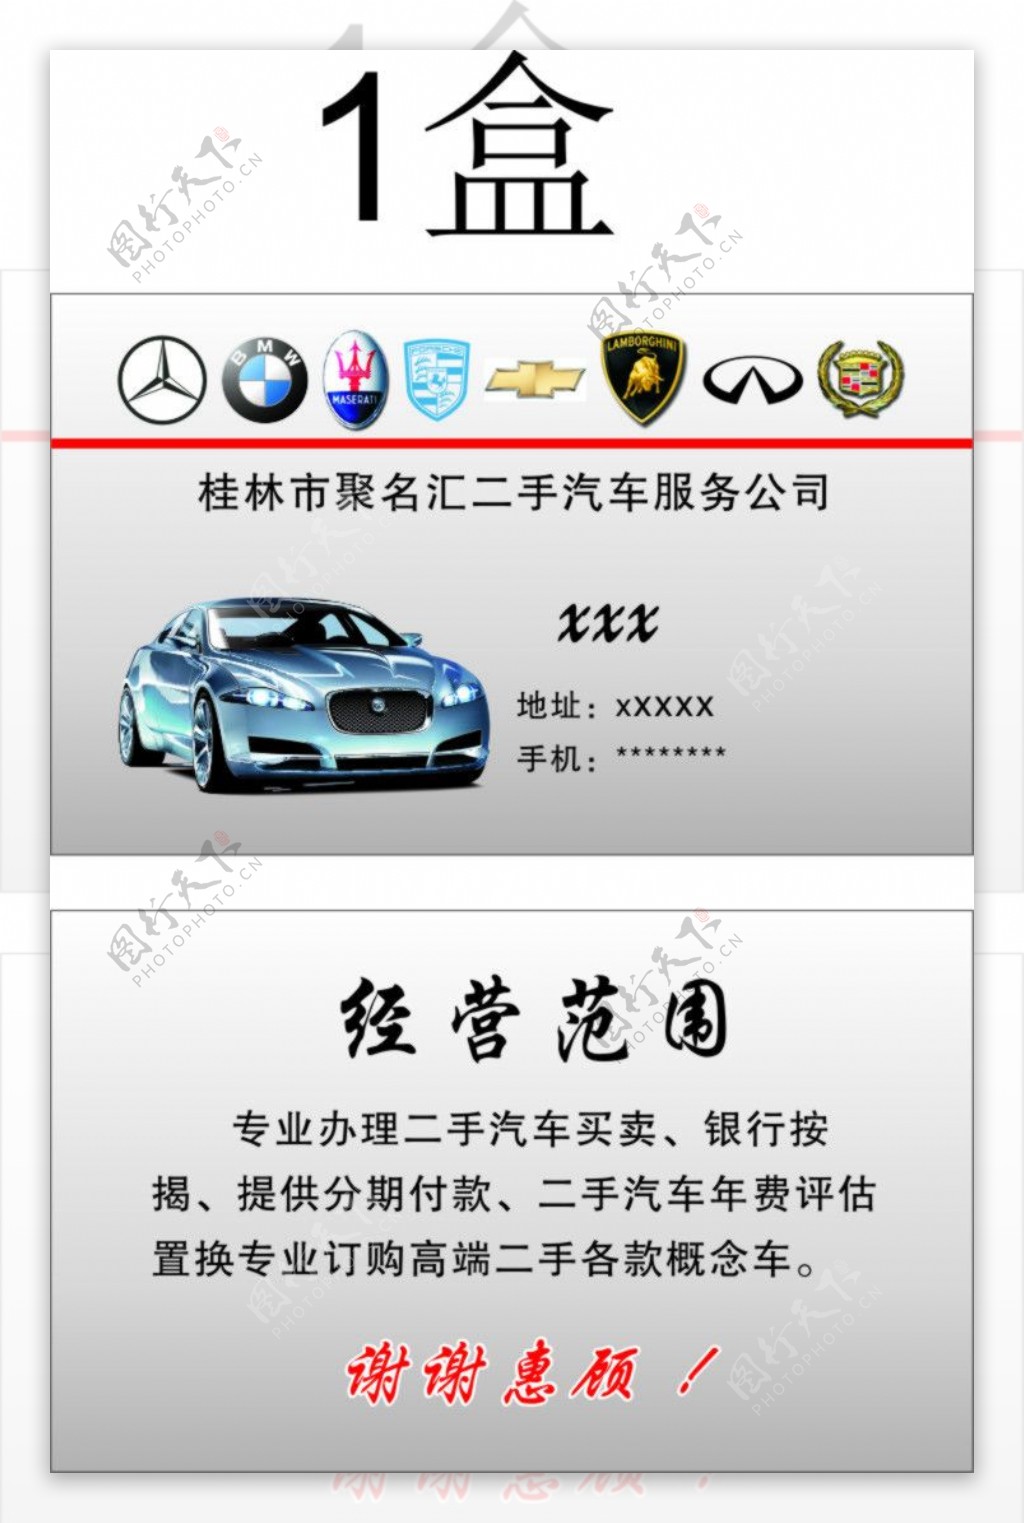 桂林市聚名汇二手汽车服务公司